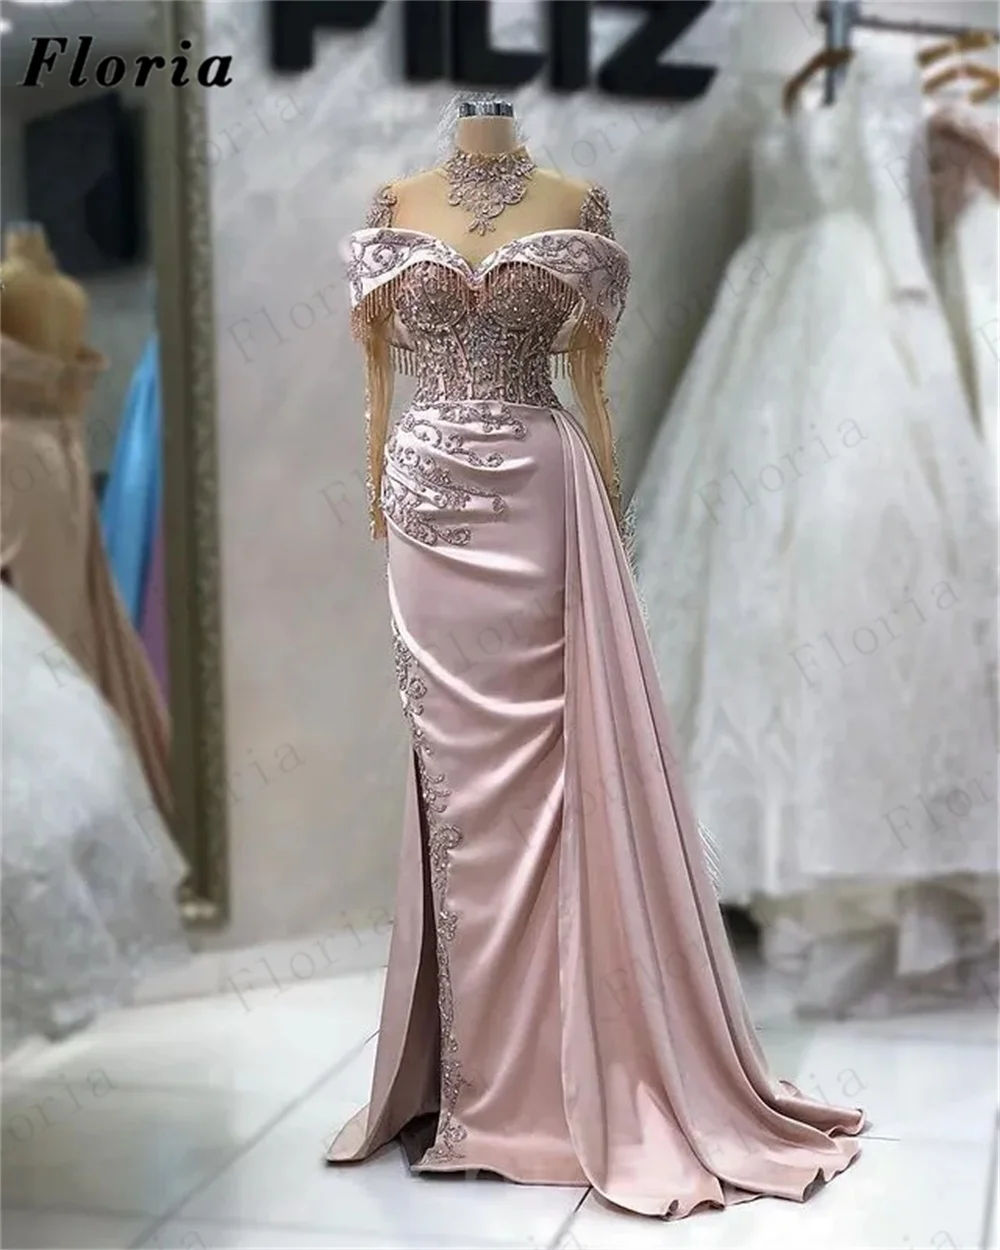 2023 Новейшие вечерние платья из розового бисера в Дубае, платье для выпускного вечера с высоким воротом, расшитое бисером на Ближнем Востоке, Элегантные платья для свадебной вечеринки в Дубае на заказ 2